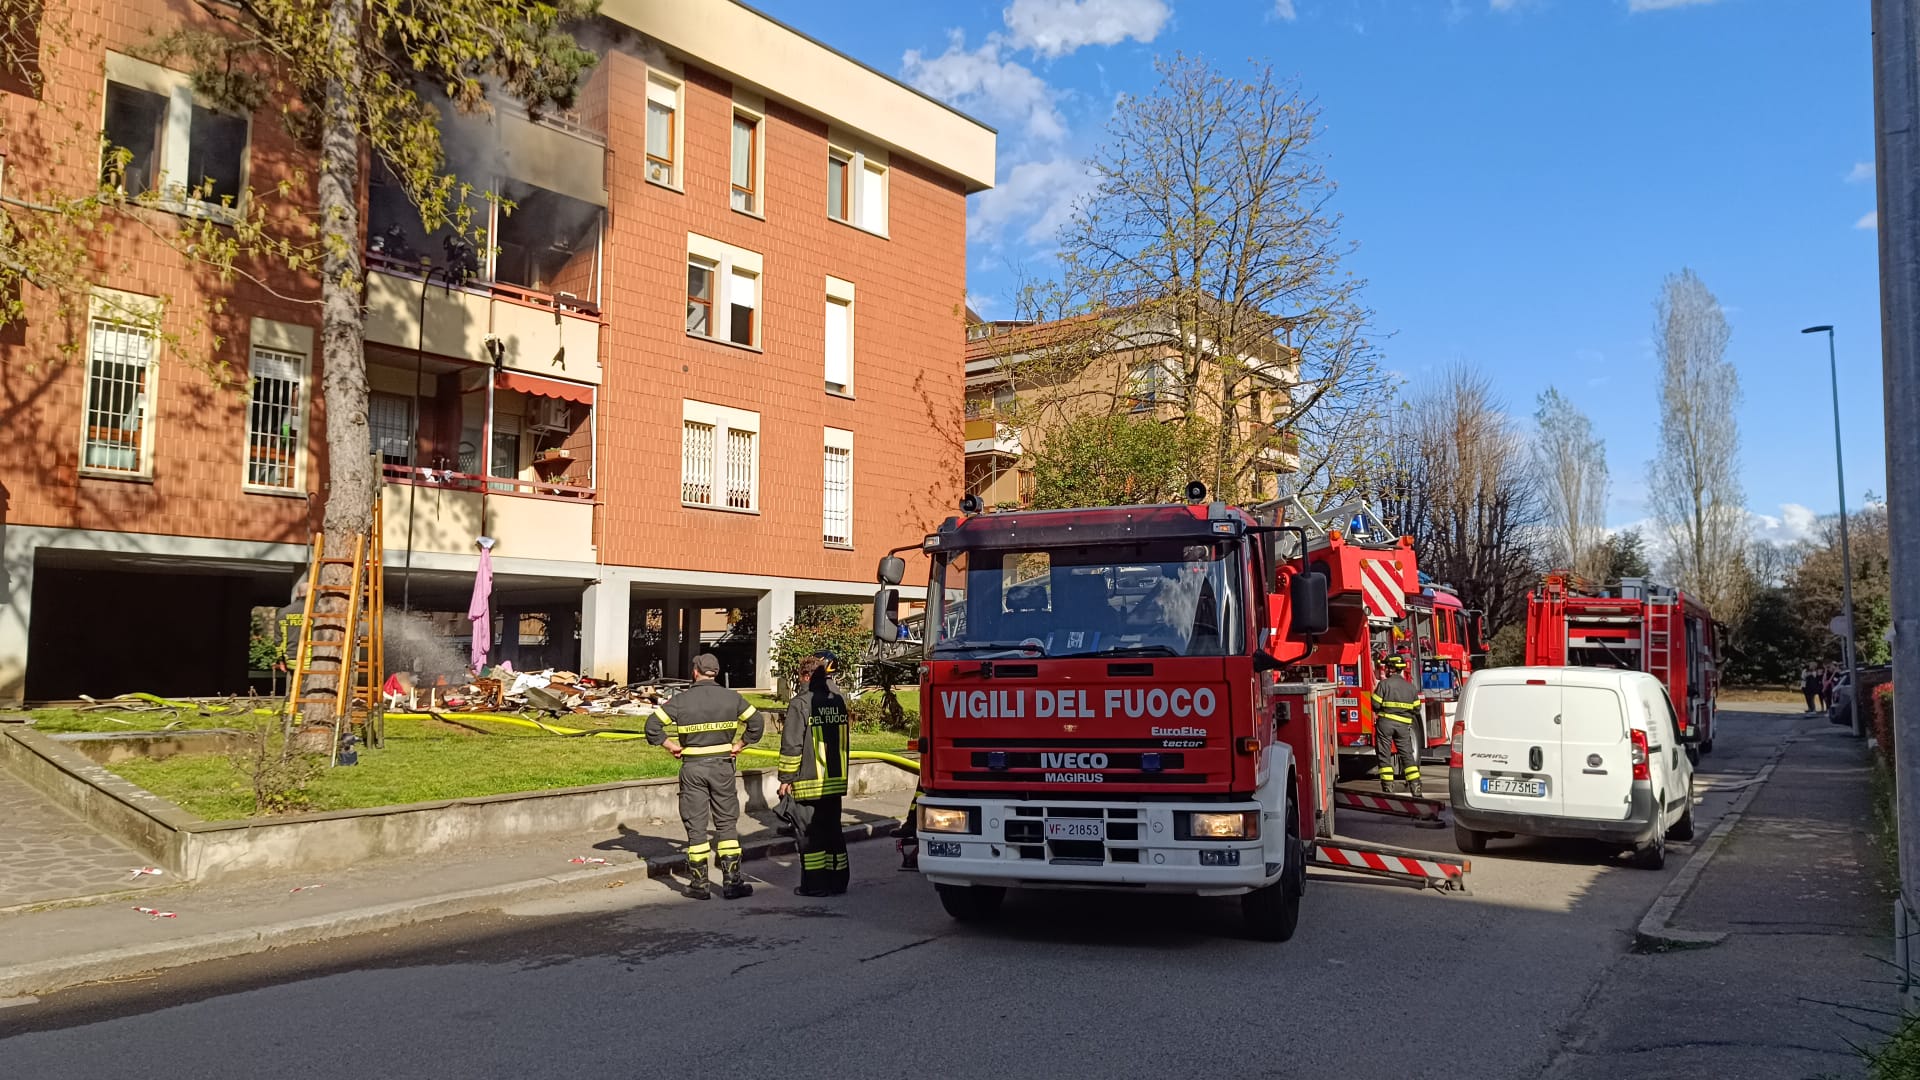  ‣ adn24 san lazzaro (bo) | incendio in un appartamento: sei persone coinvolte e condominio evacuato